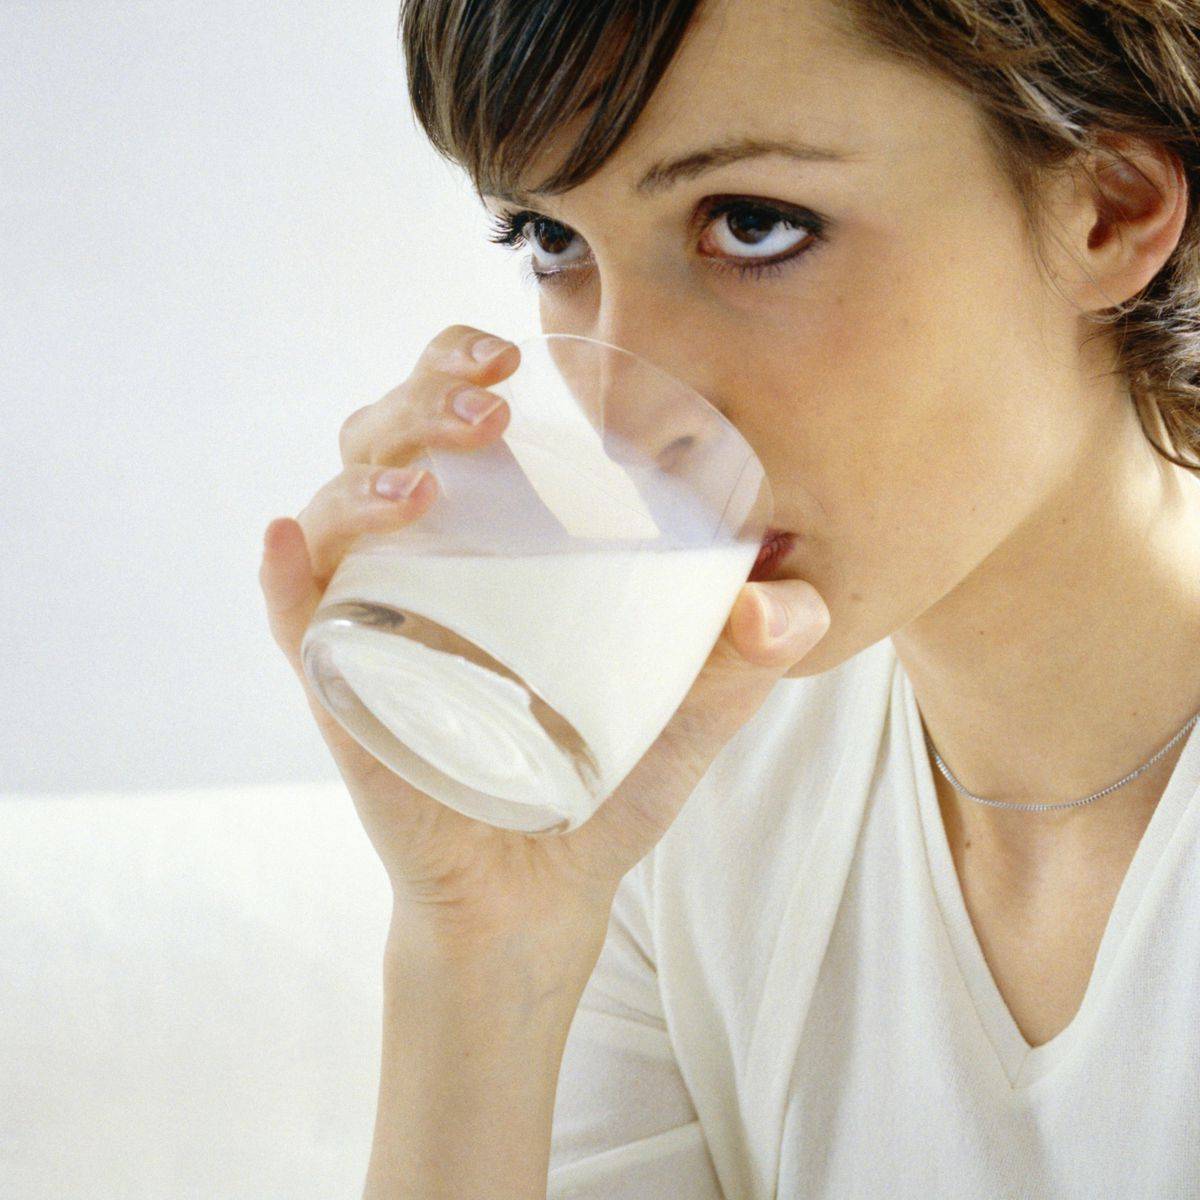 Чай с молоком: польза и вред для организма, можно ли пить при беременности и в каких случаях нельзя, рецепты приготовления